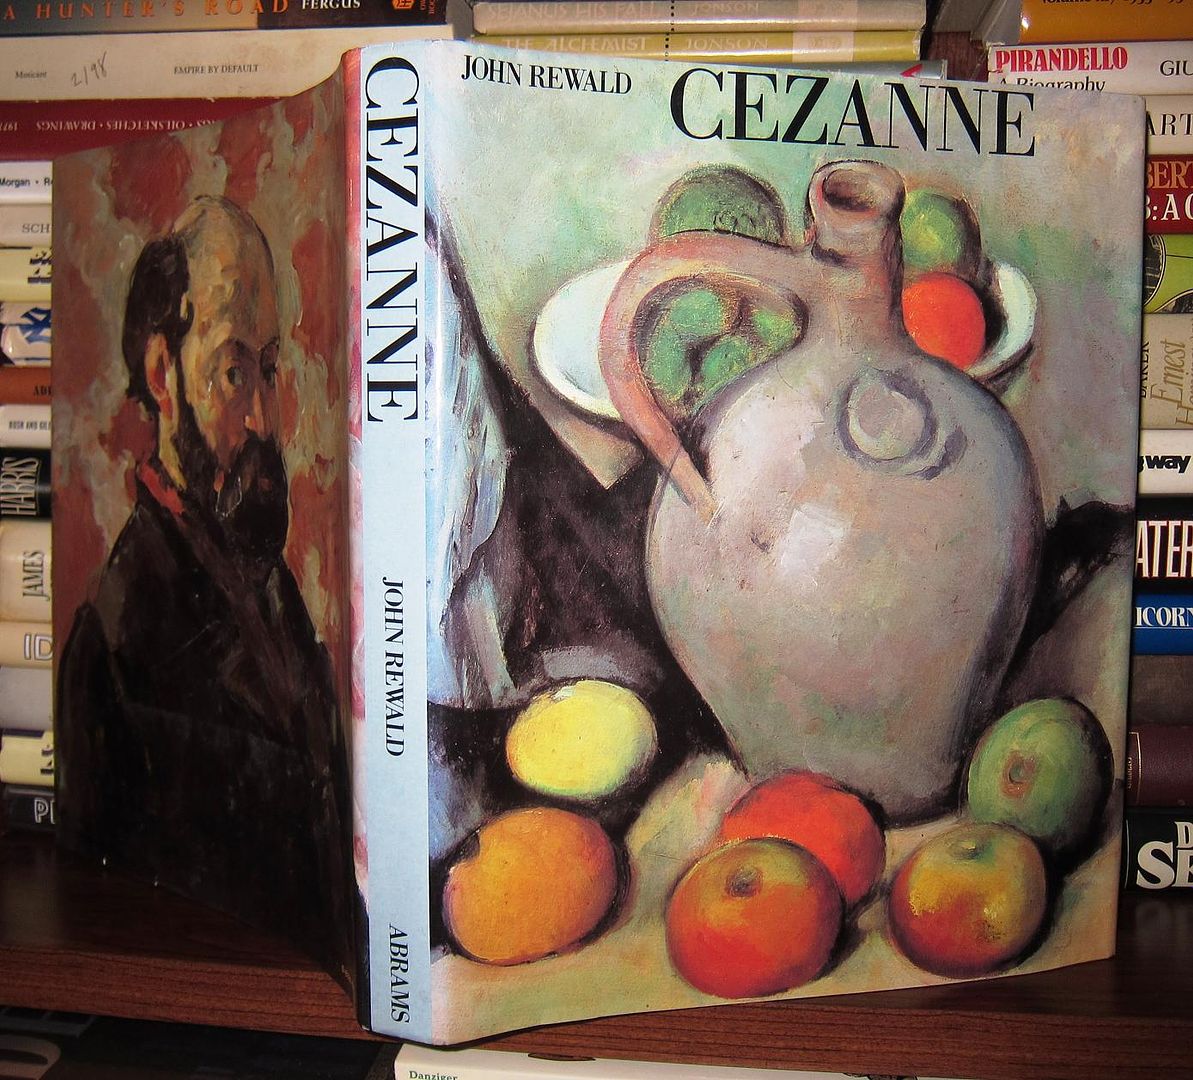 REWALD, JOHN - PAUL CEZANNE - Cezanne a Biography